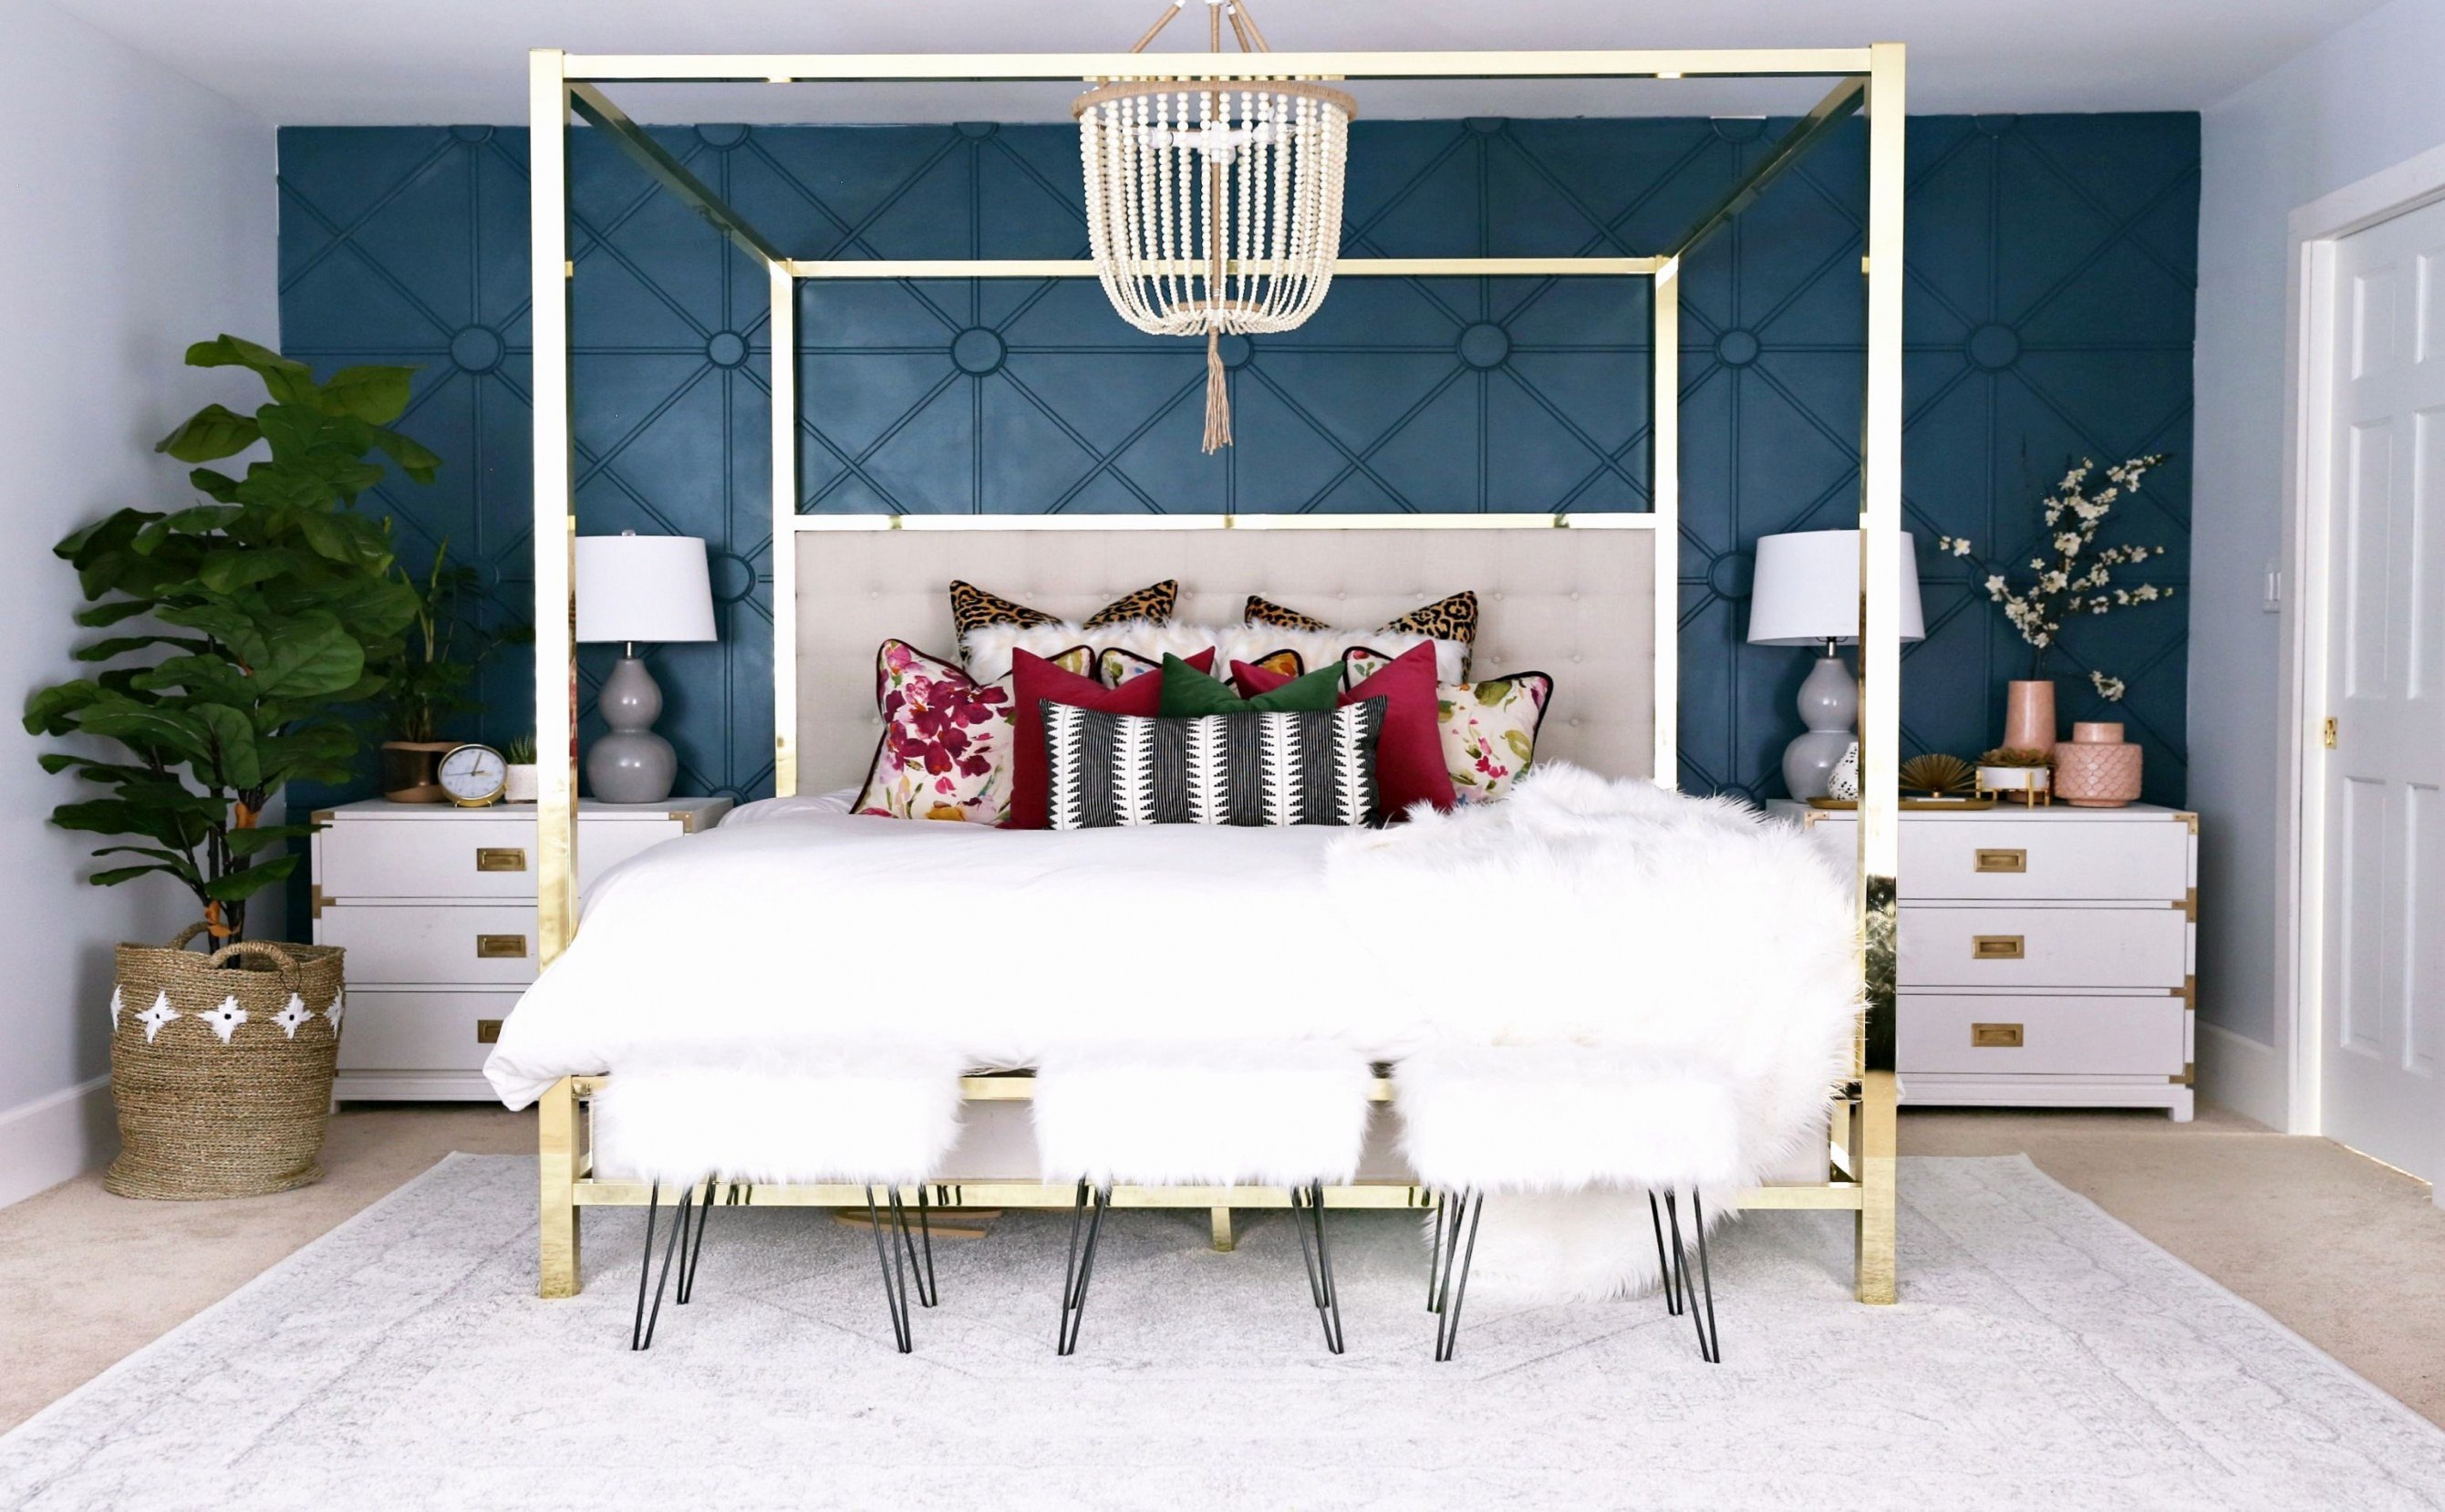 Master Bedroom Bedding Ideas Best Of Minimalist Bedroom Decor 43 Fresh Master Bedroom Ideas for